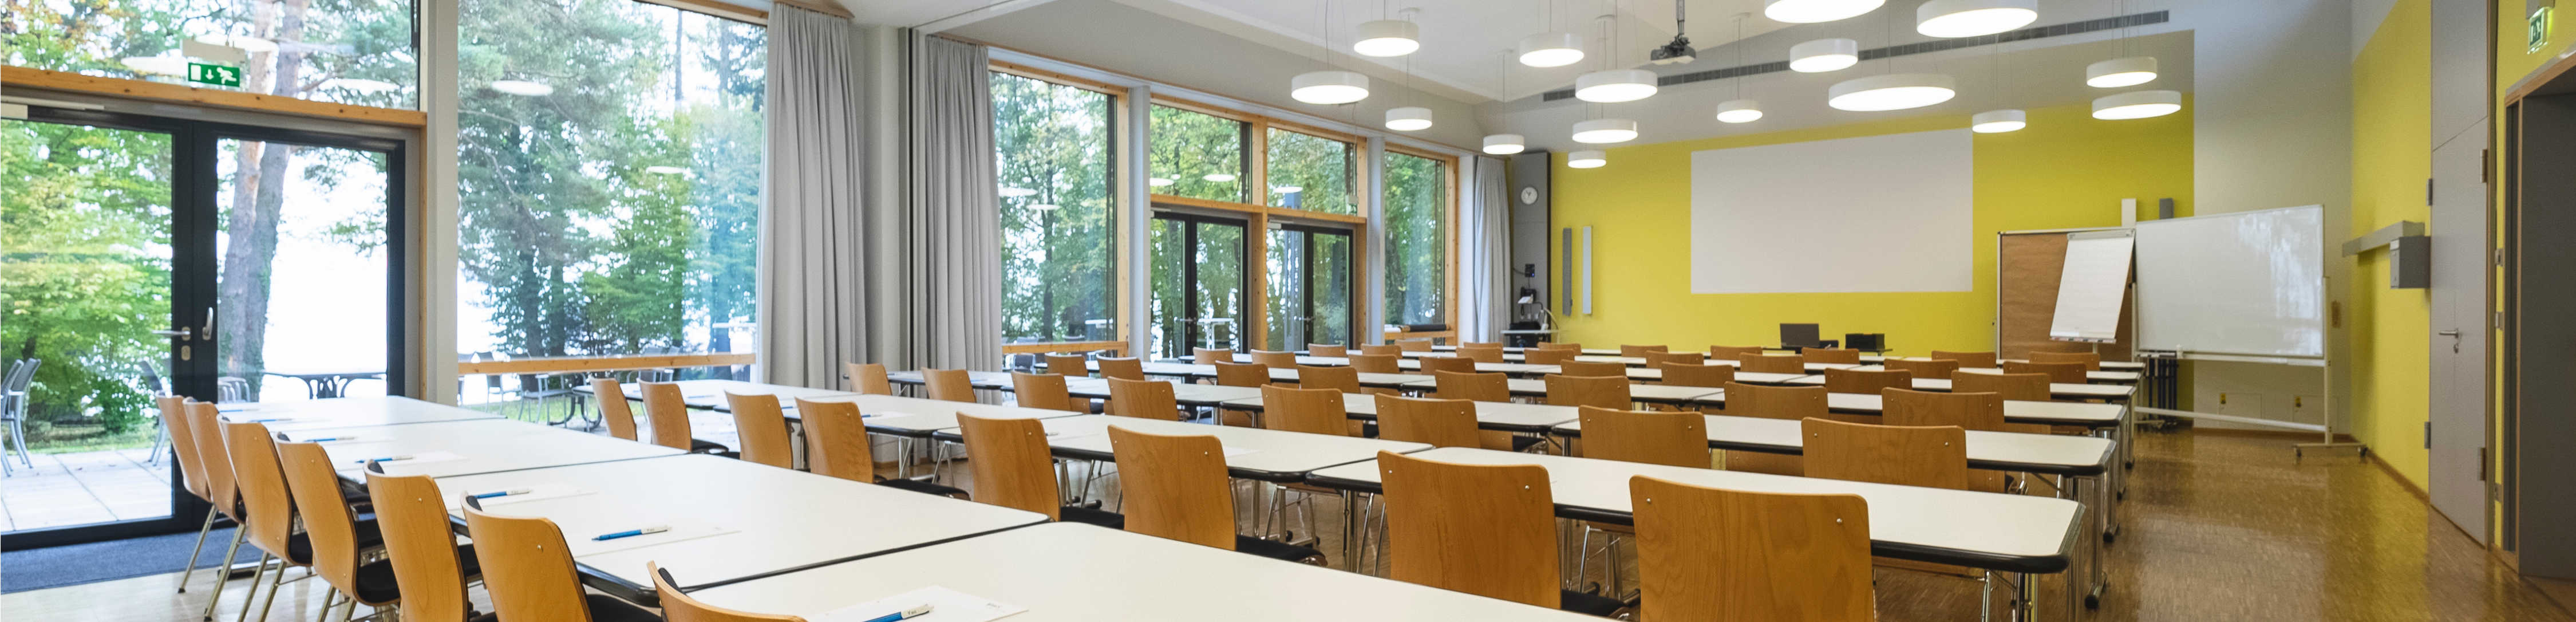 Das Bild ist das Headerbild der Seminarräume des BVS-Bildungszentrums in Holzhausen. Es zeigt einen großen Seminarraum im BVS-Bildungszentrum in Holzhausen.